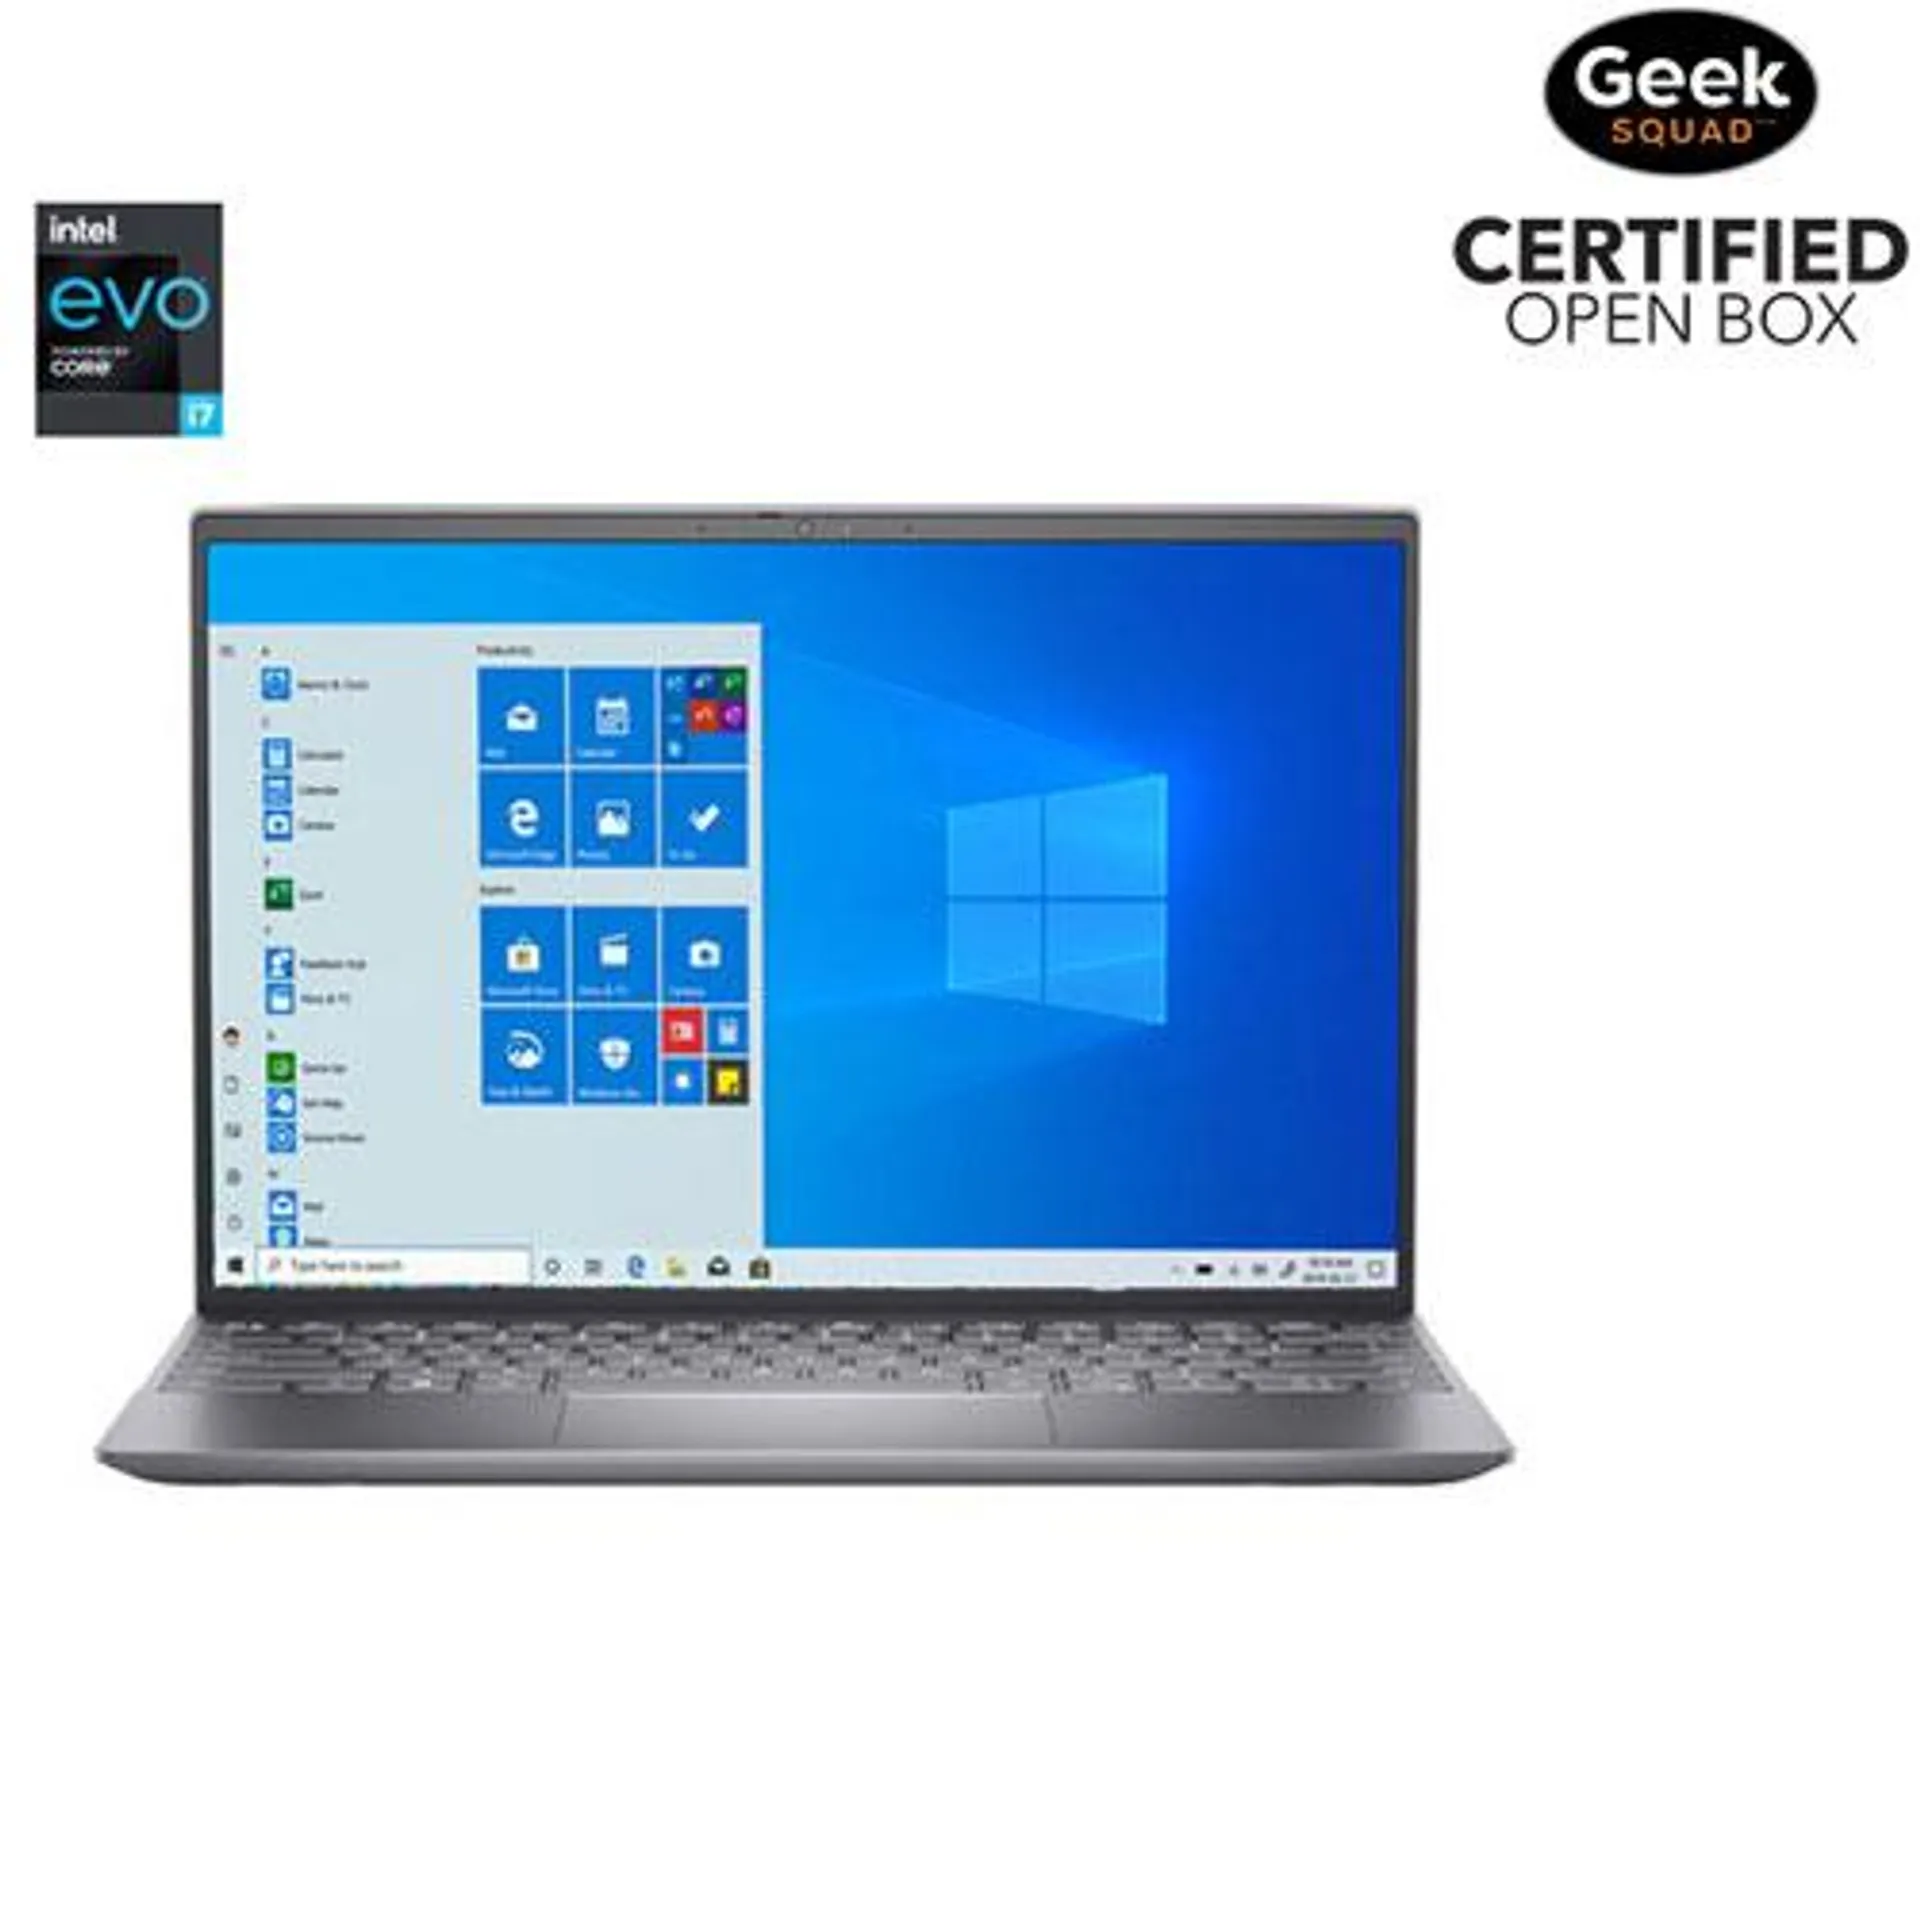 Open Box - Dell Inspiron 13.3" Laptop - Silver (11th Gen Intel Core i7-11390H/512GB SSD/16GB RAM/Win 10)